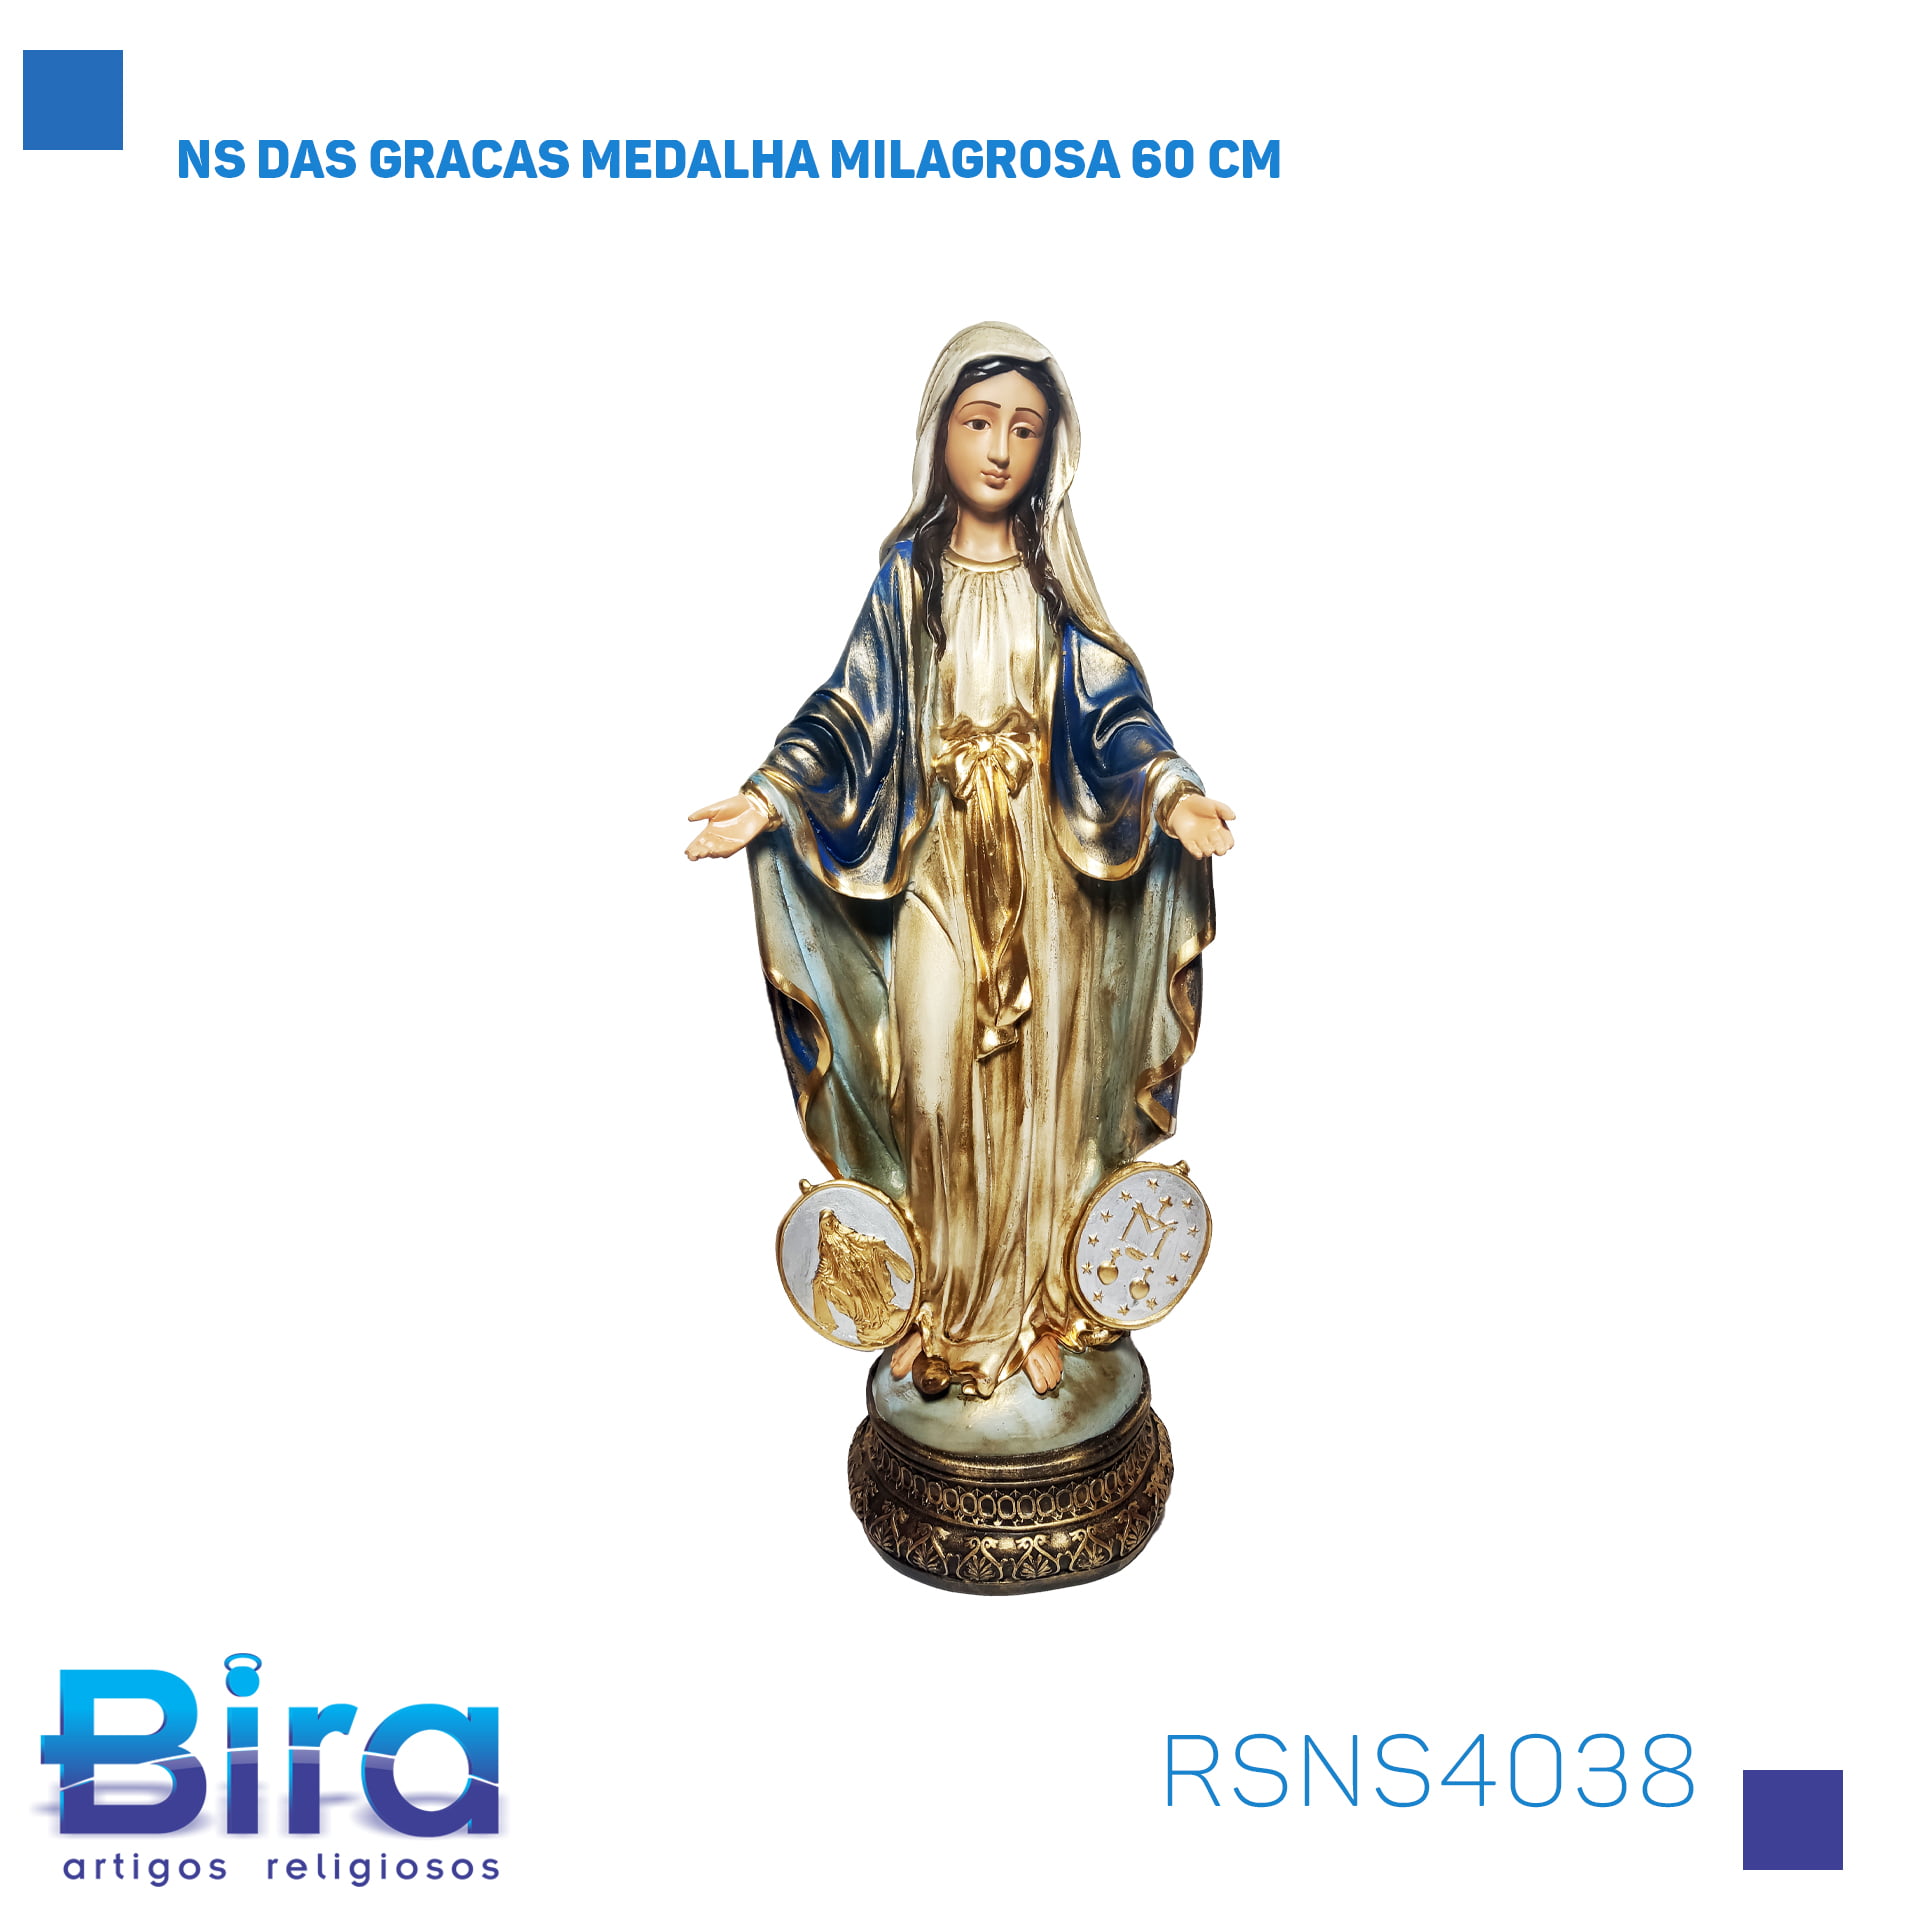 Bira Artigos Religiosos - NS DAS GRACAS MEDALHA MILAGROSA 60 CM CÓD.: RSNS4038